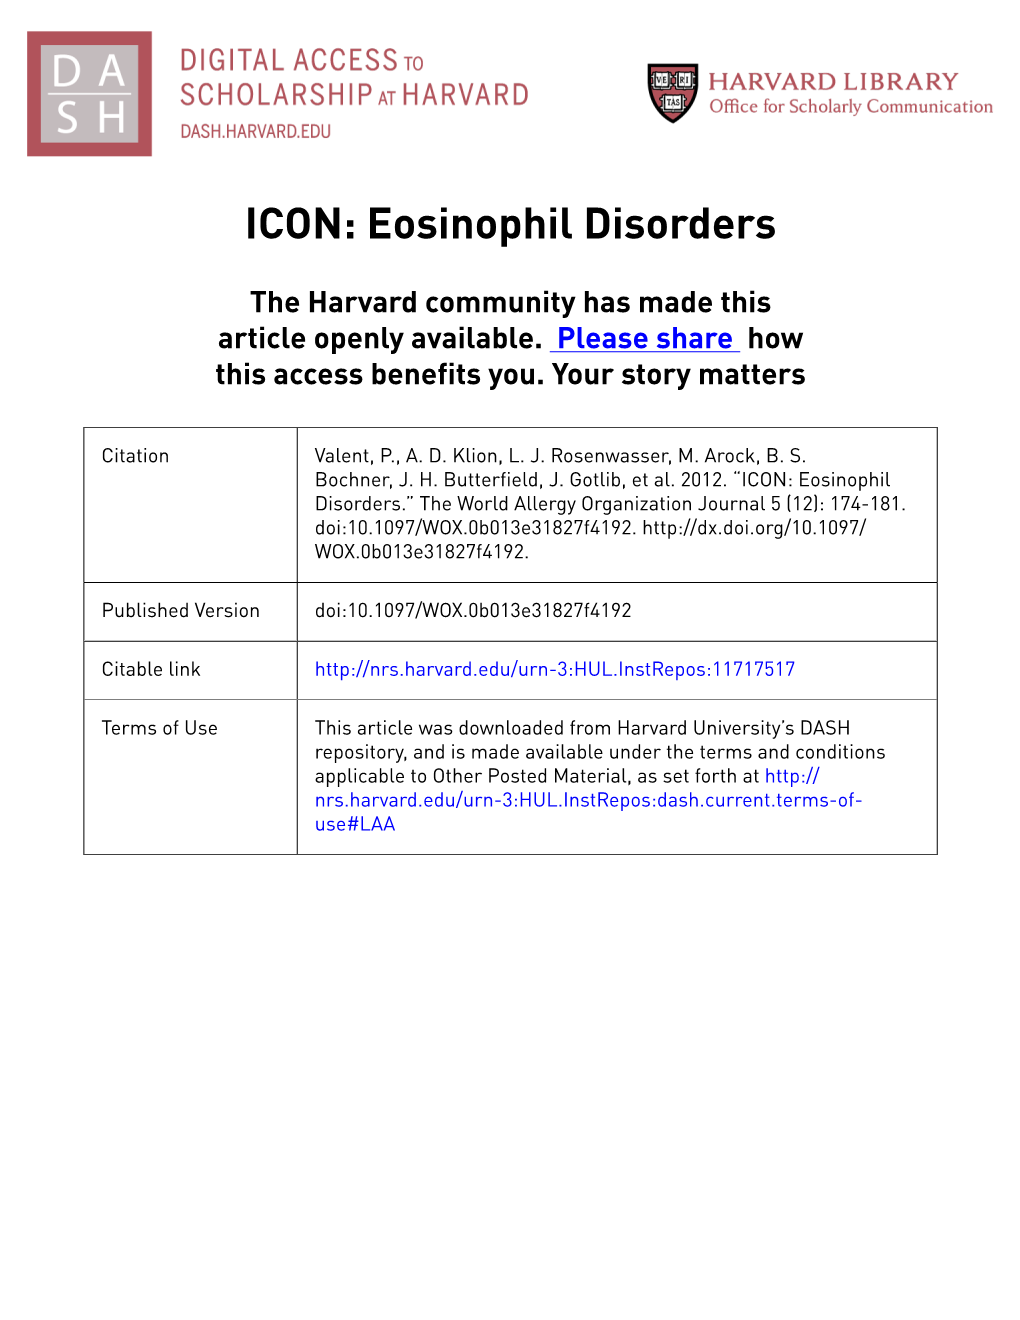 ICON: Eosinophil Disorders